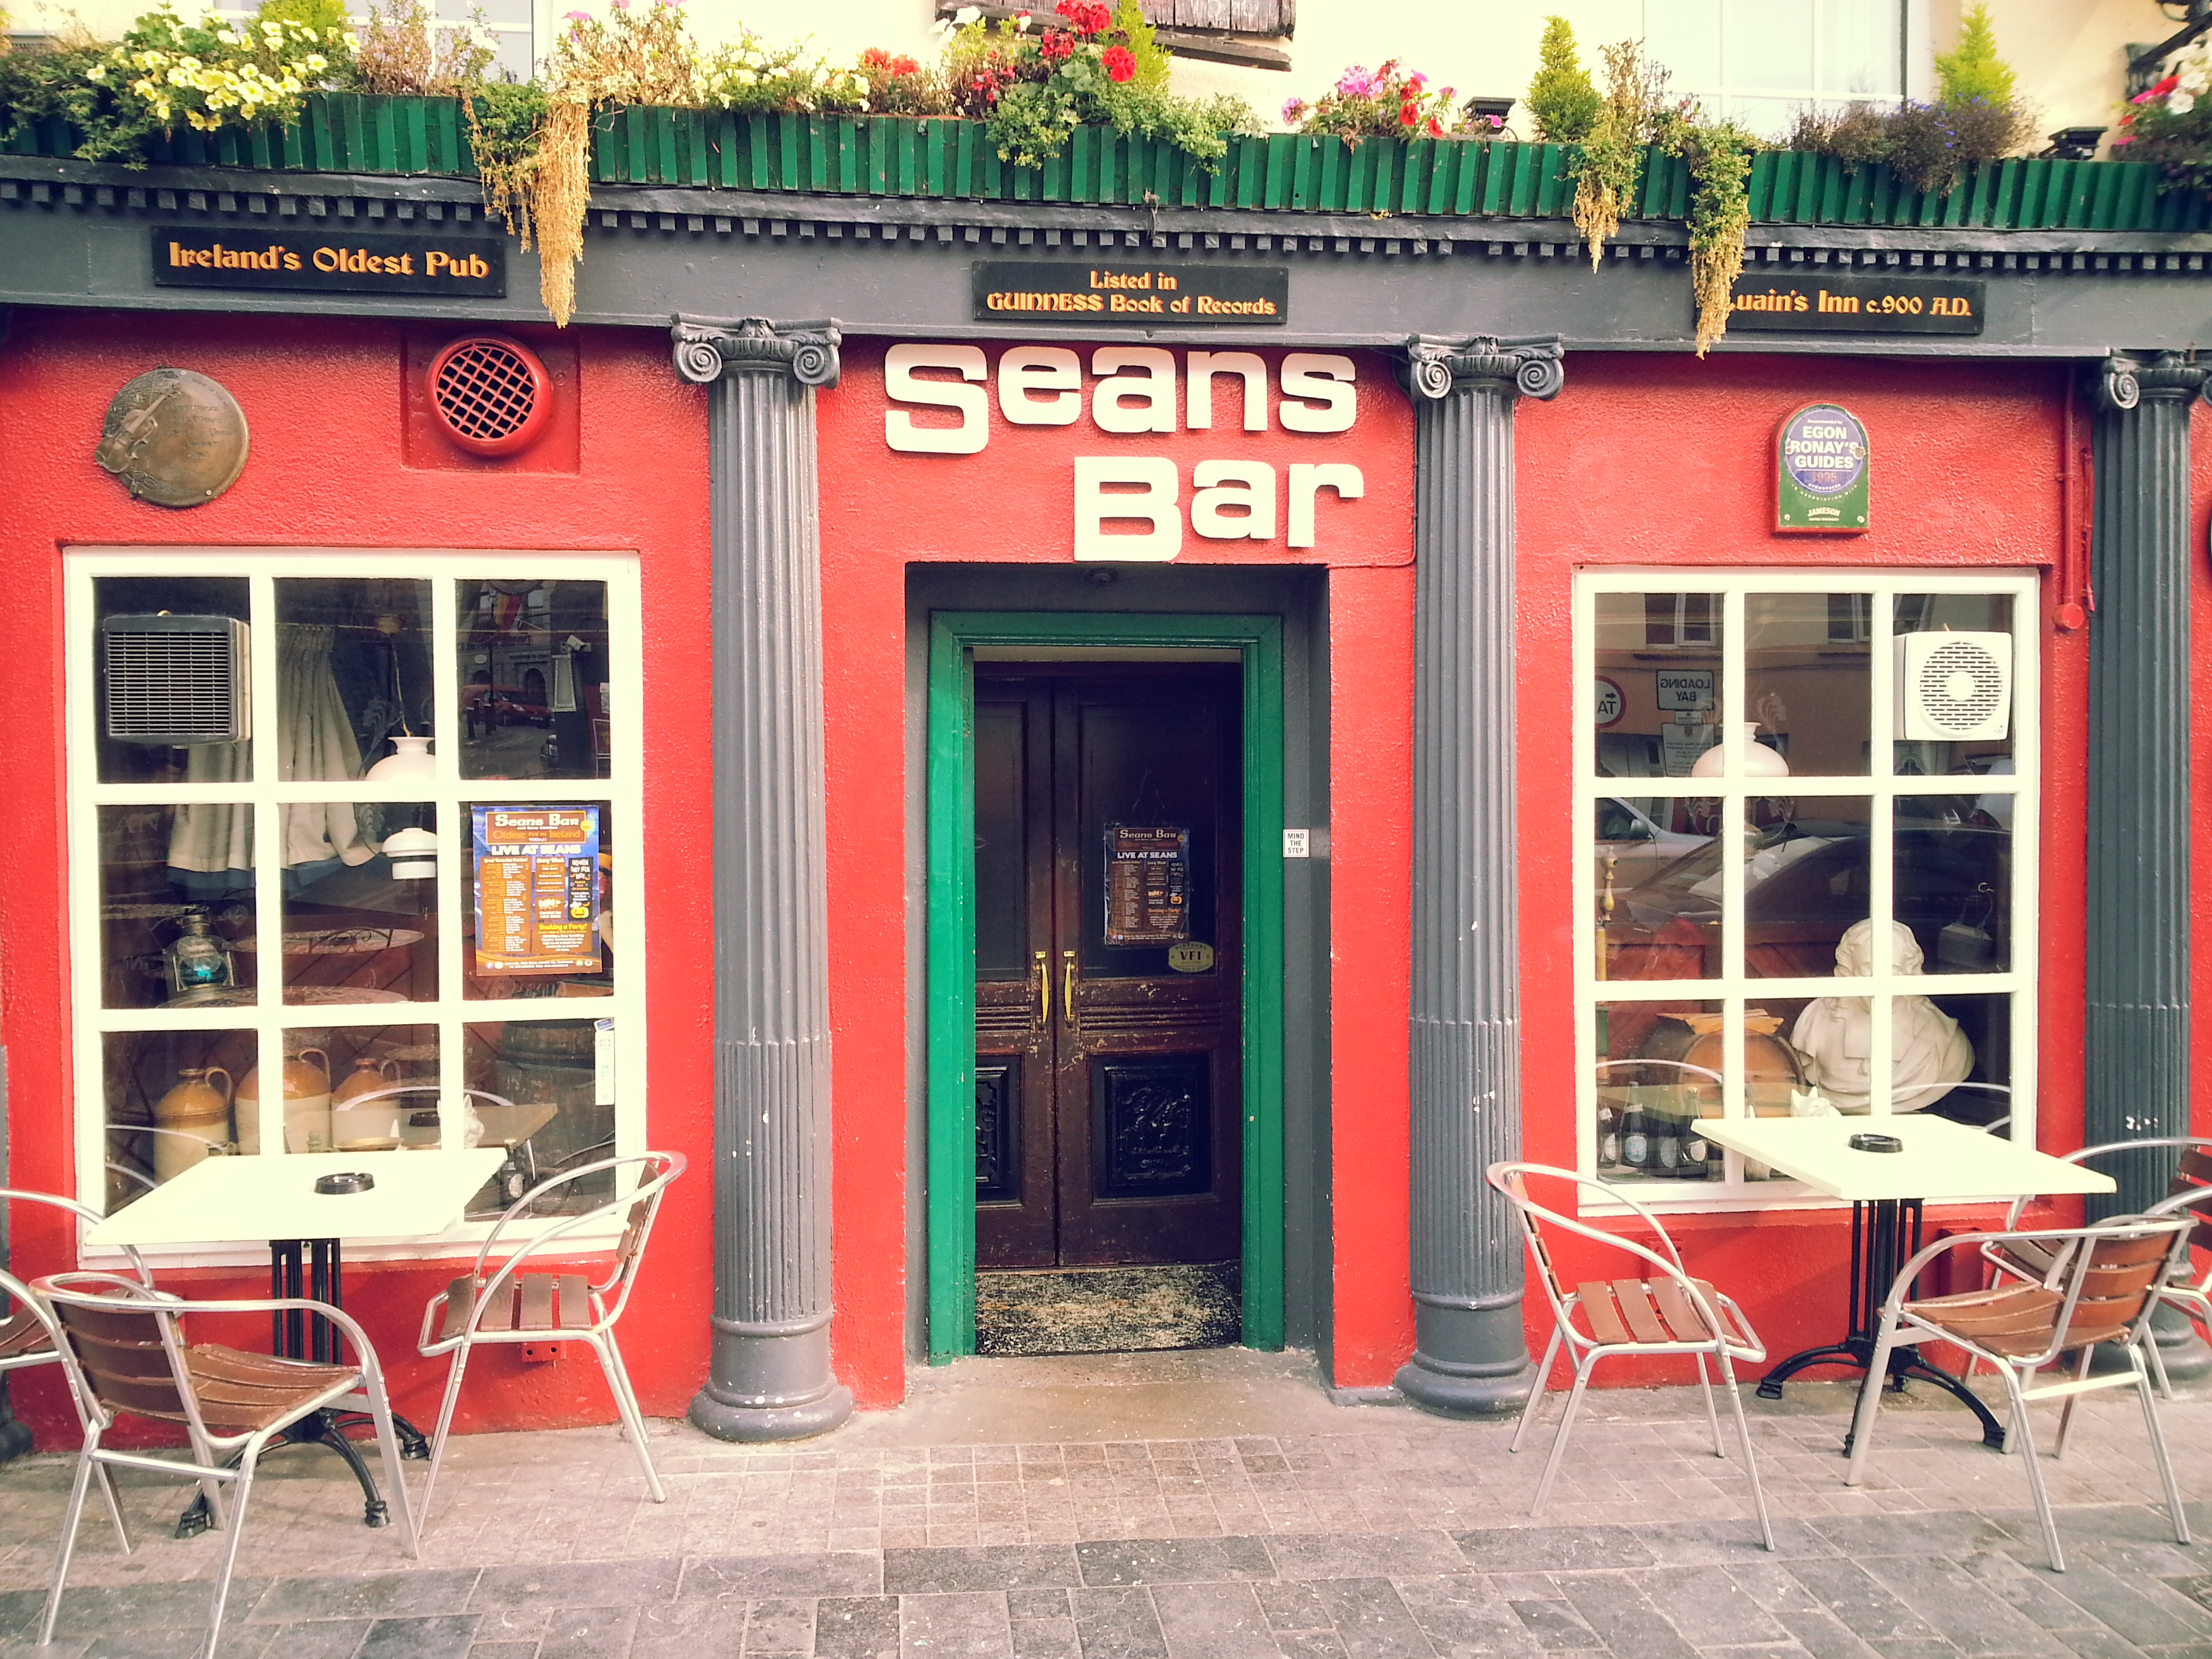 Шон паб. Паб Sean's Bar Ирландия. Seans Bar паб в Ирландии. Паб Шон в Ирландии. Бар Шона: самый старый паб Ирландии.